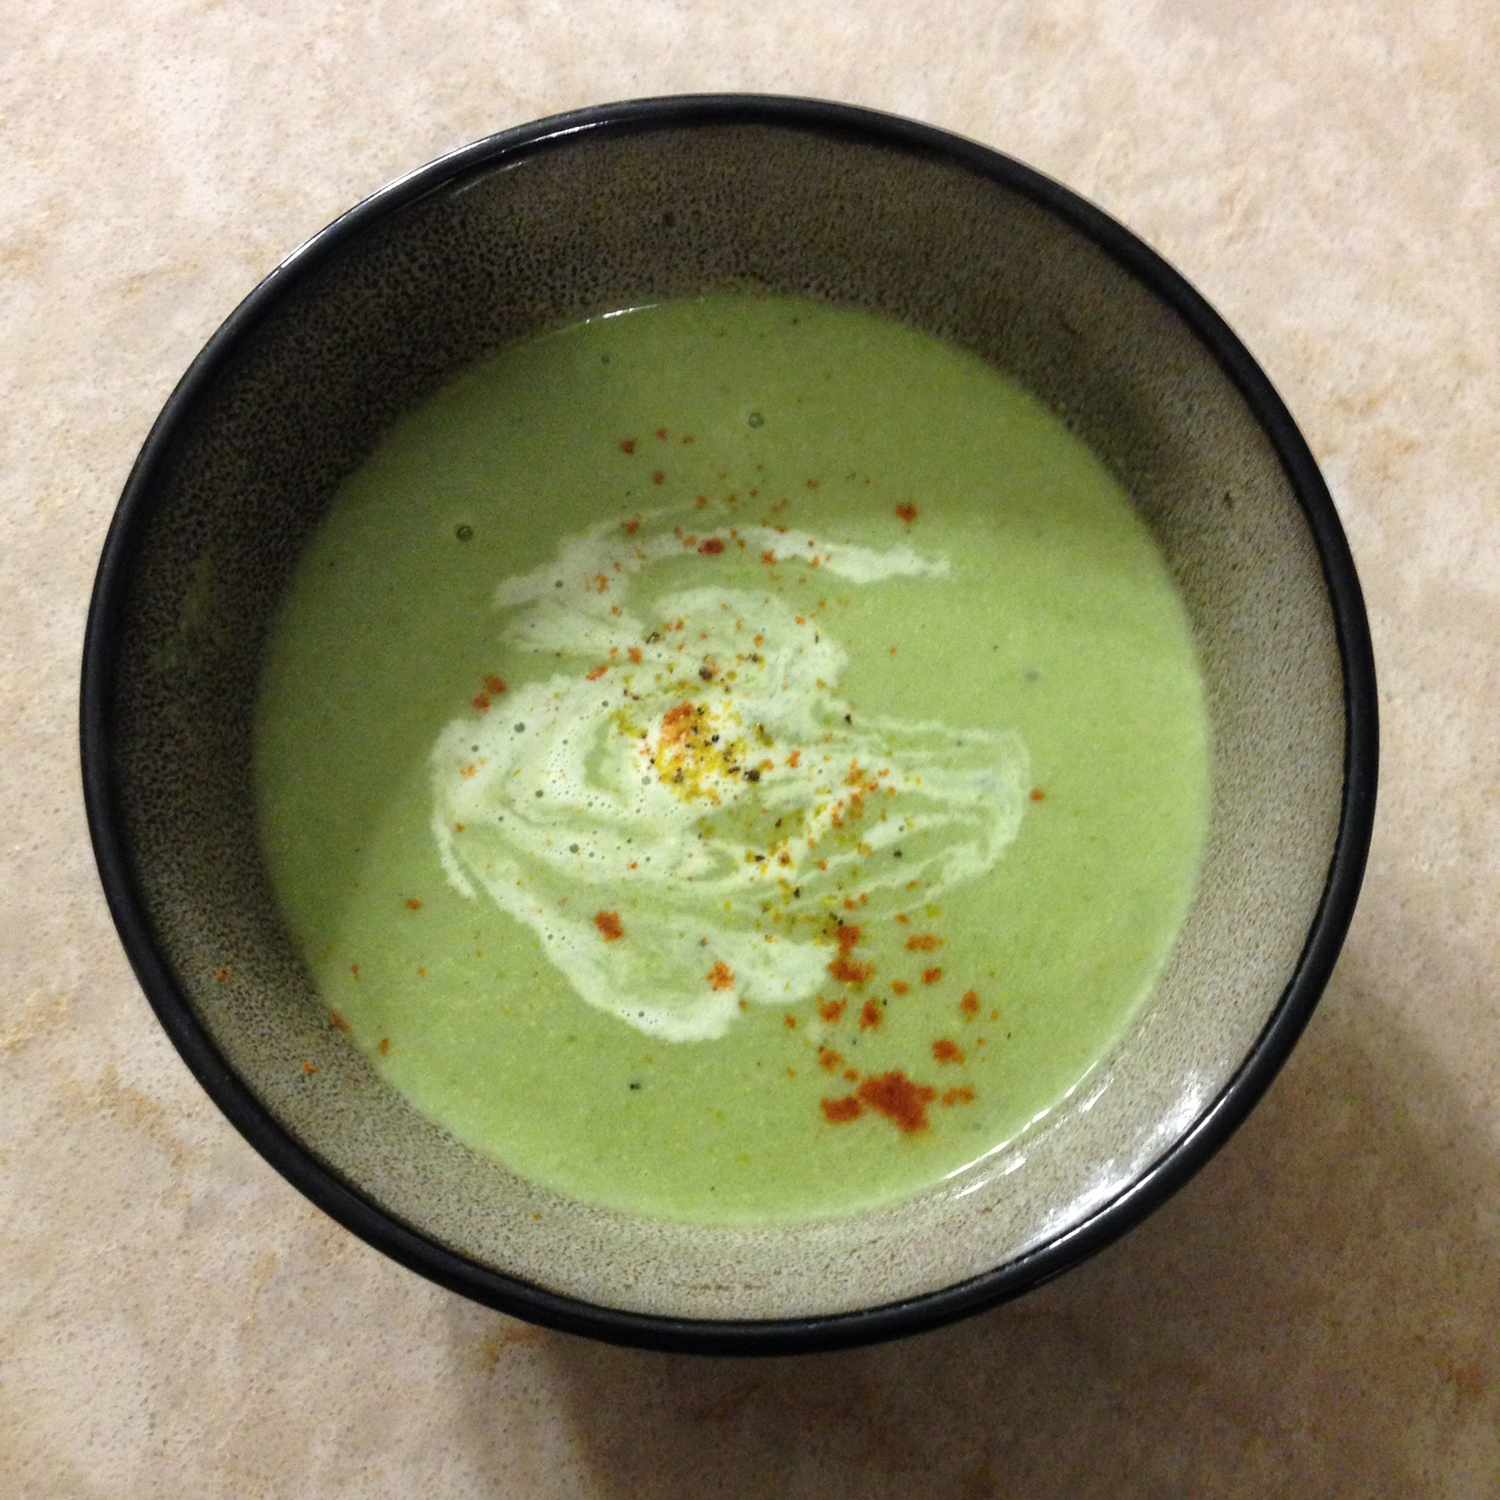 Chef Johns Cream of Asparagus Soup